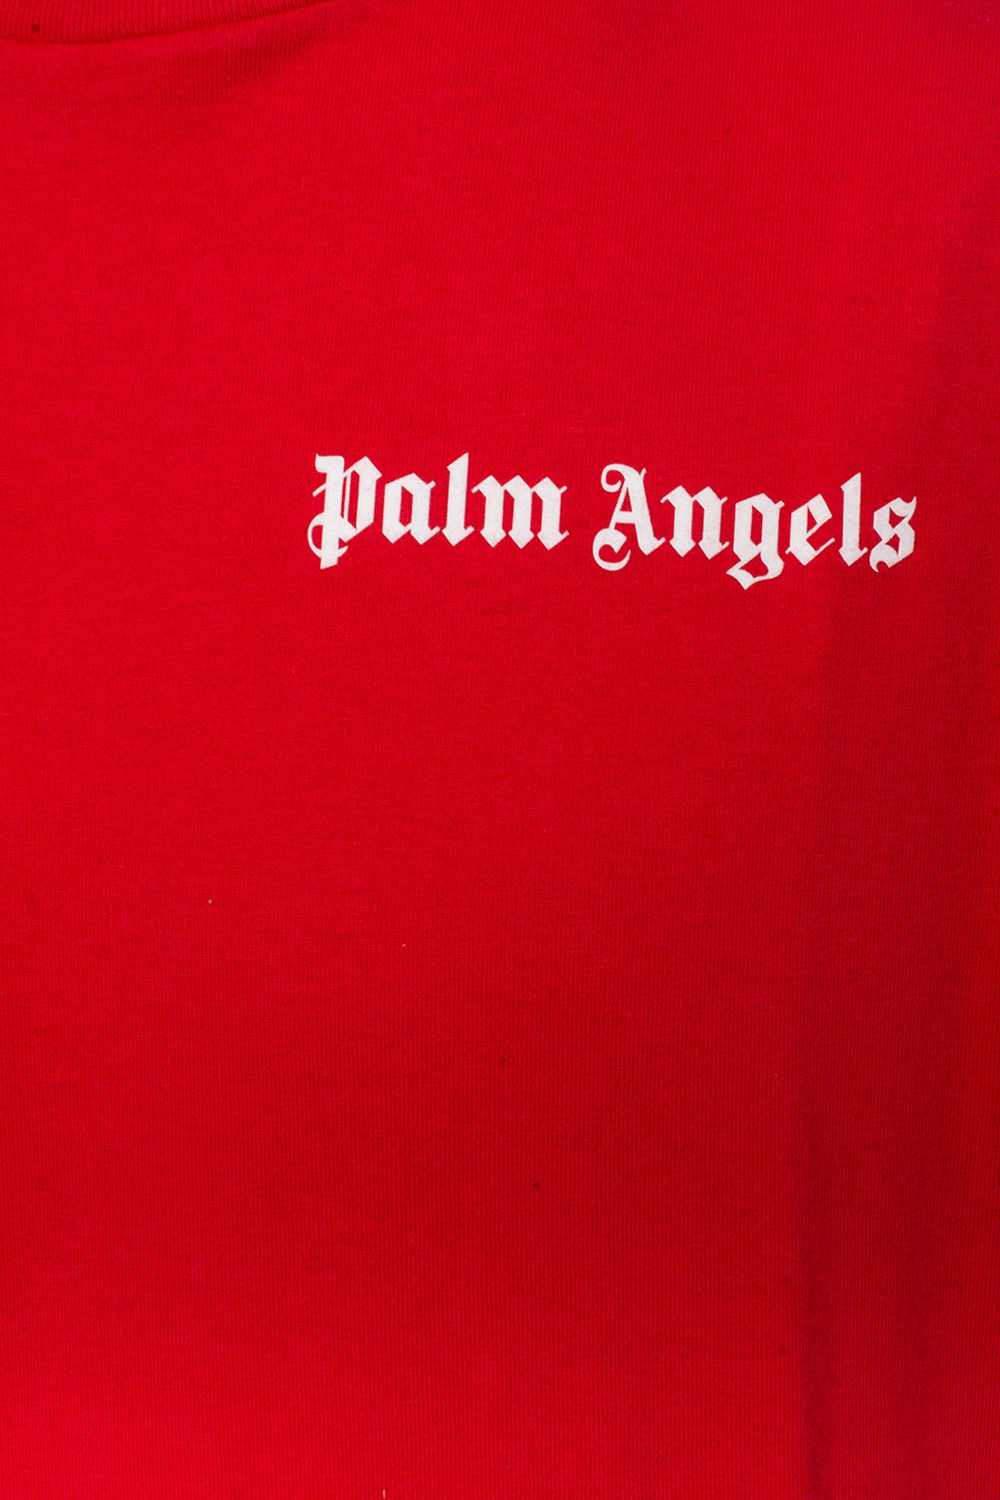 palm angels round neck